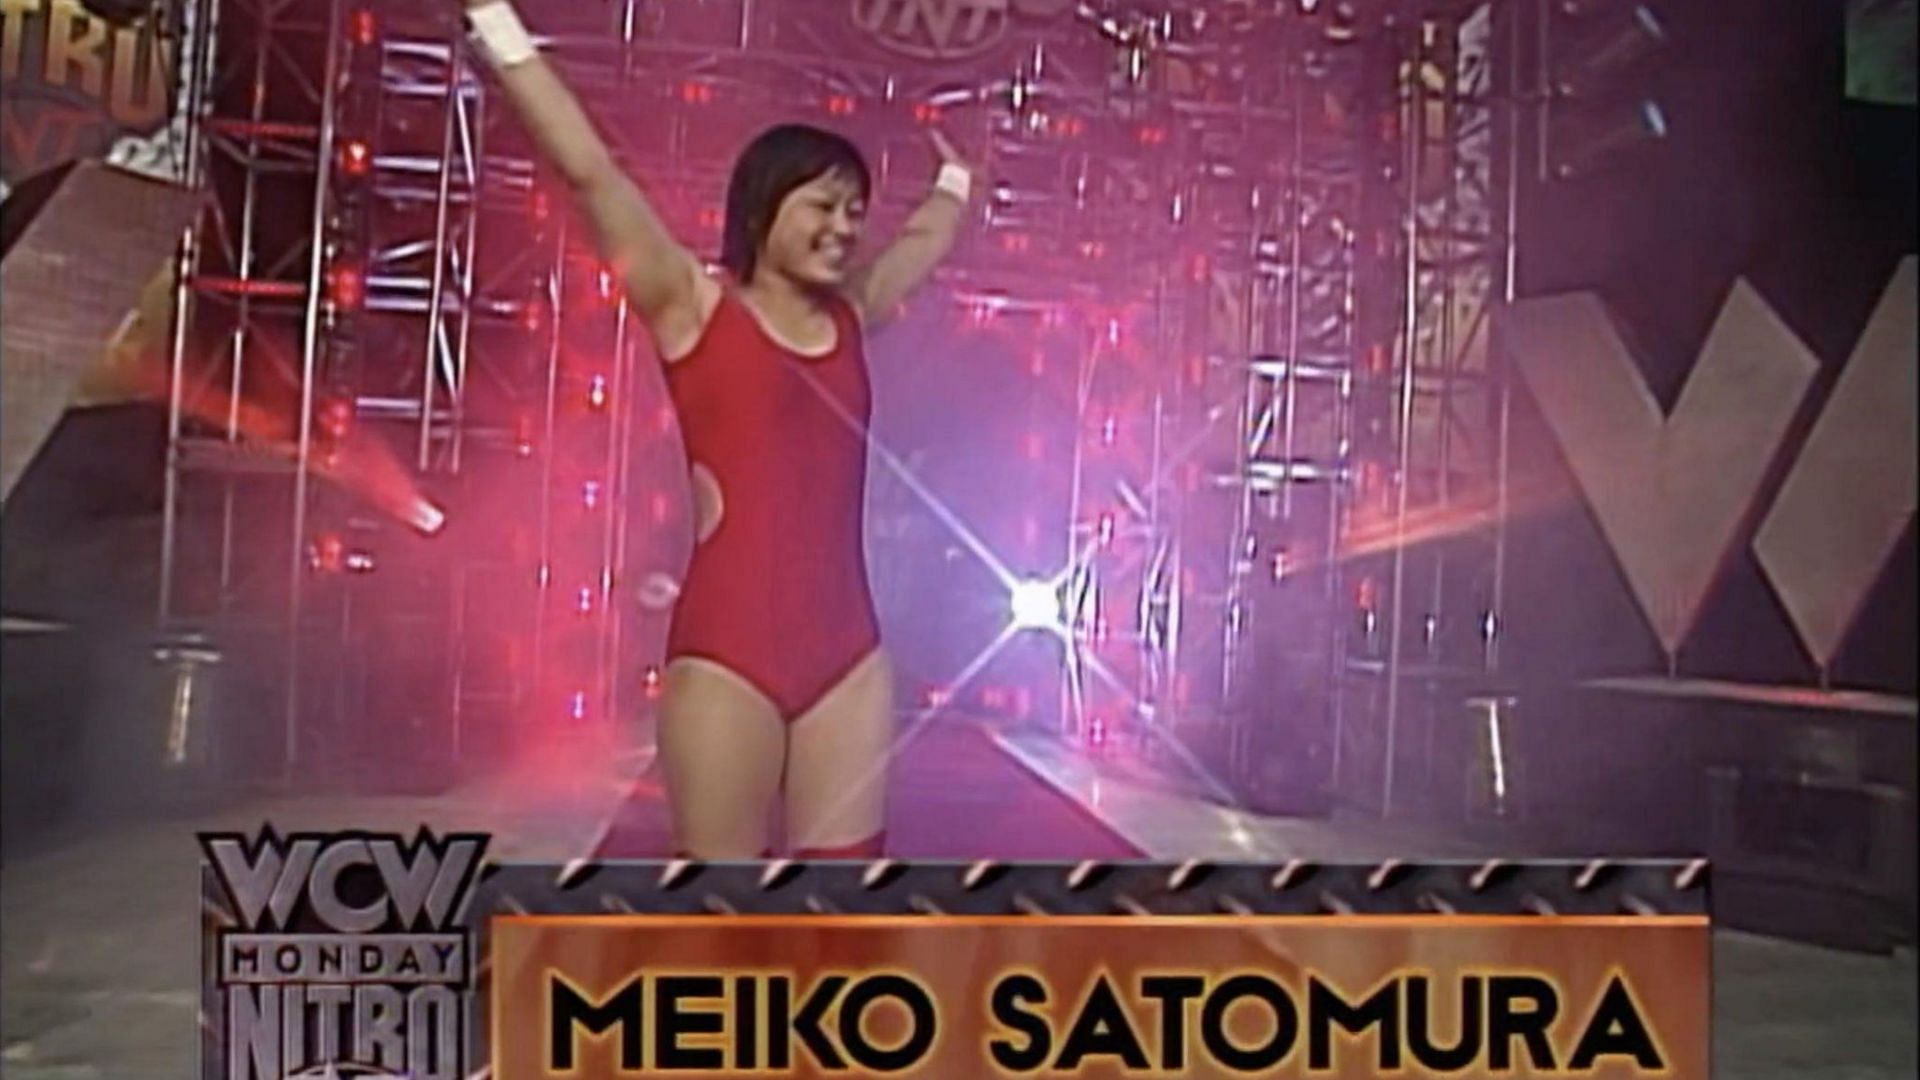 Meiko Satomura wrestled in WCW